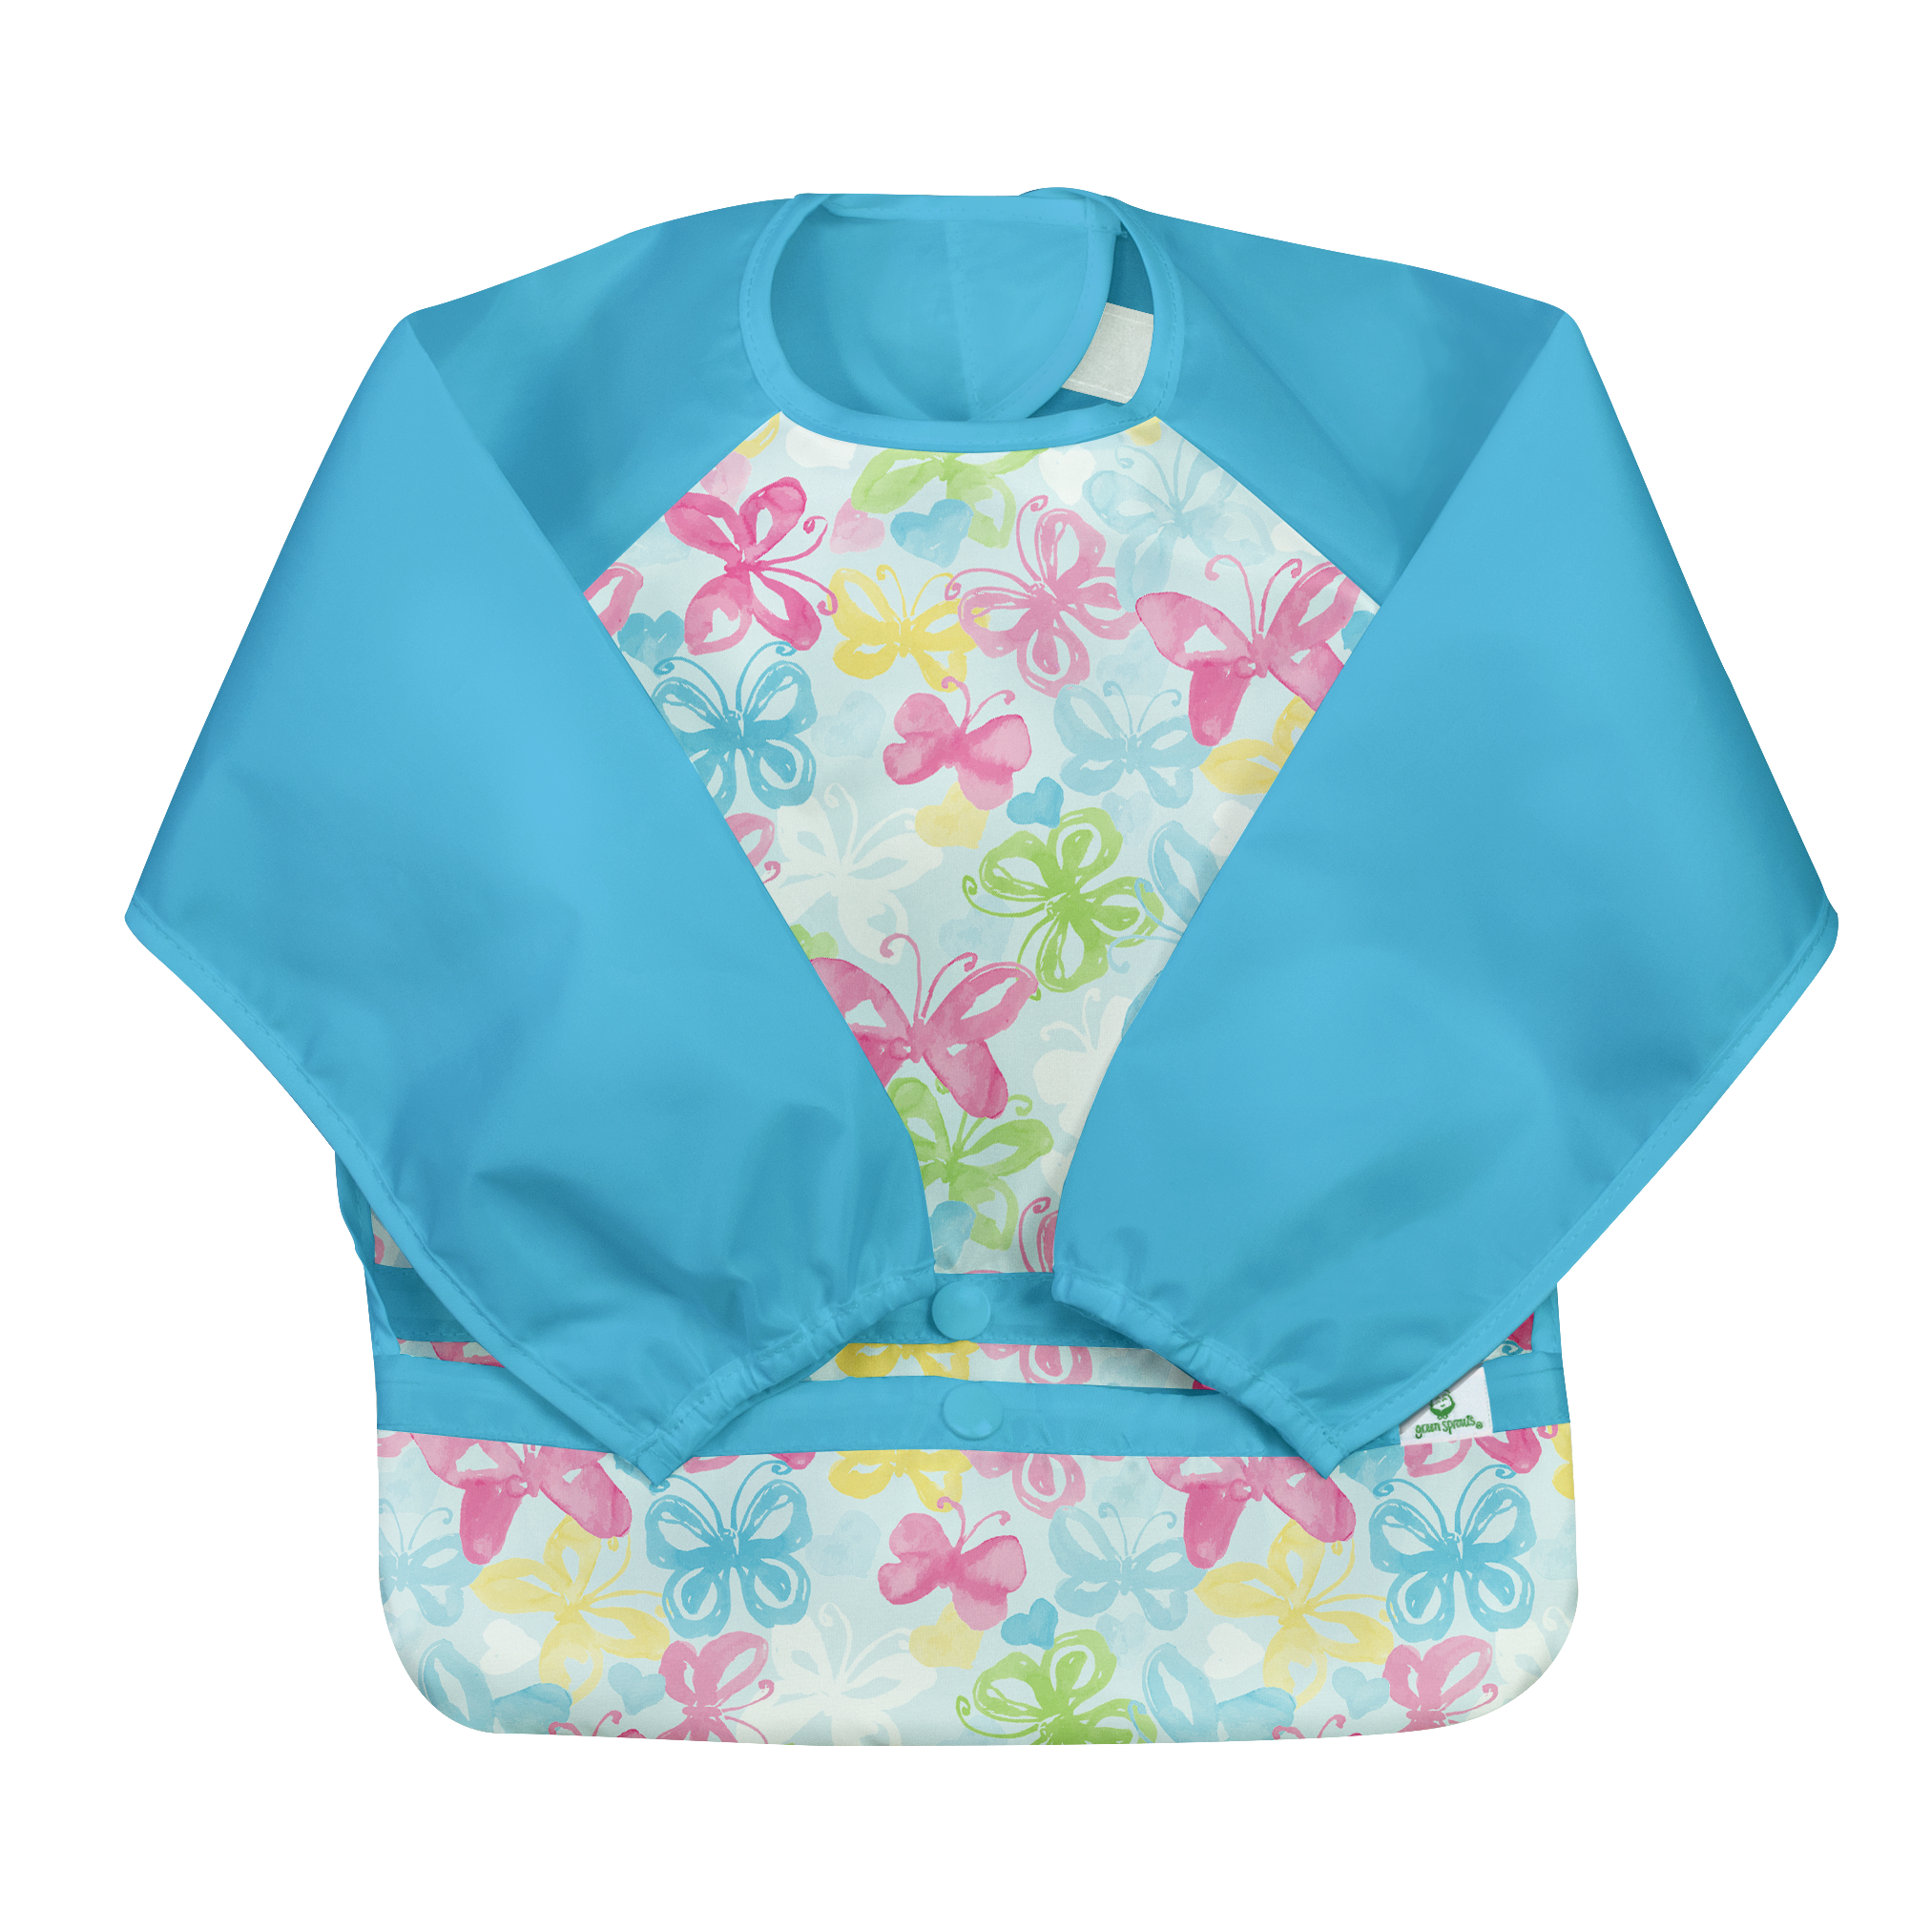 Snap & Go Easy Wear Long Sleeve Bib - Aqua Watercolor Butterflies- 2T/4T - HoneyBug 